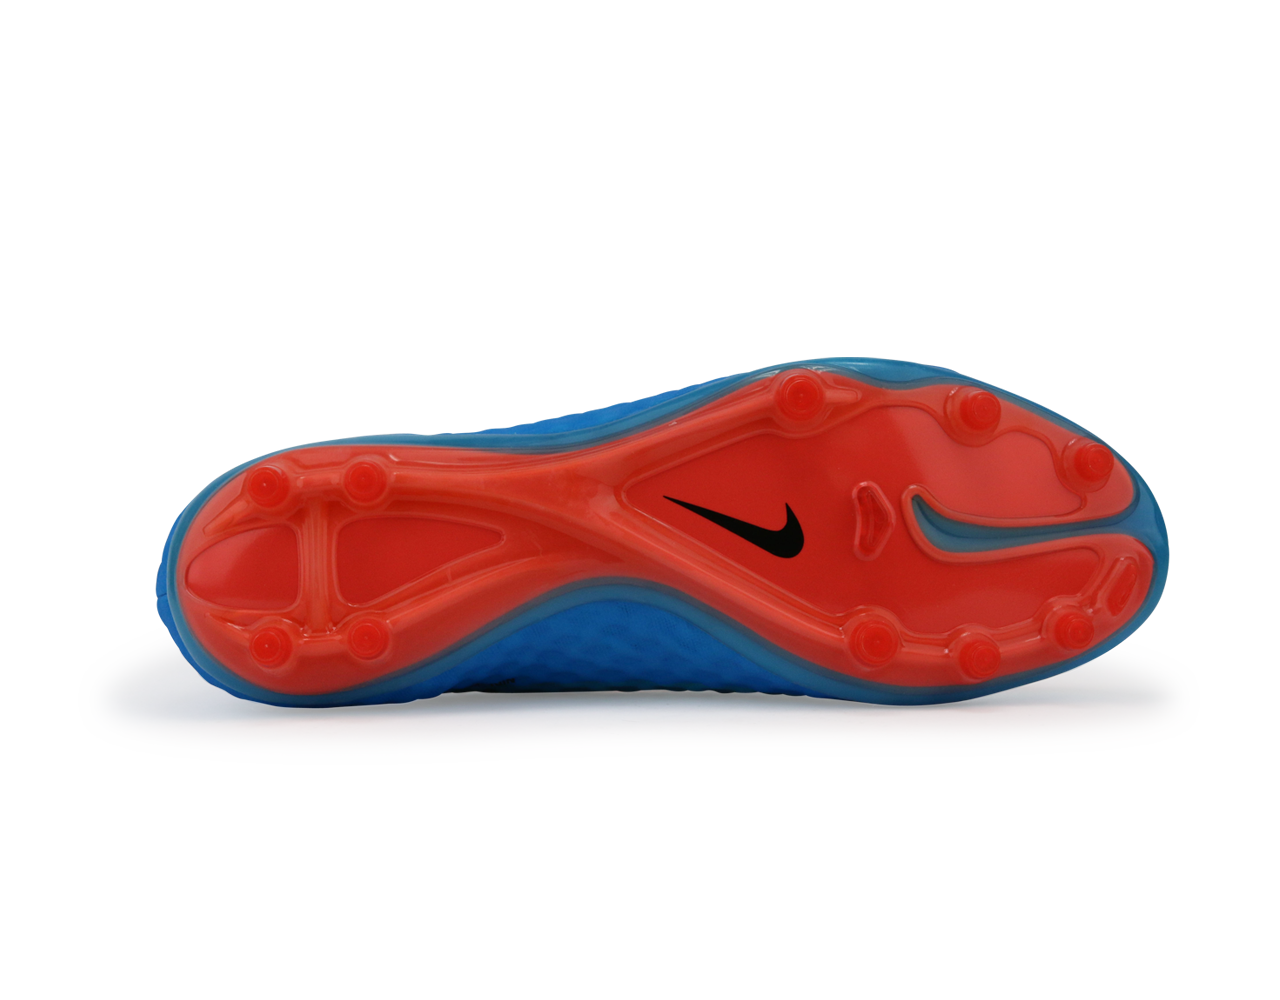 Nike Men's Hypervenom Phantom FG Clearwater/Total Crimson/Black